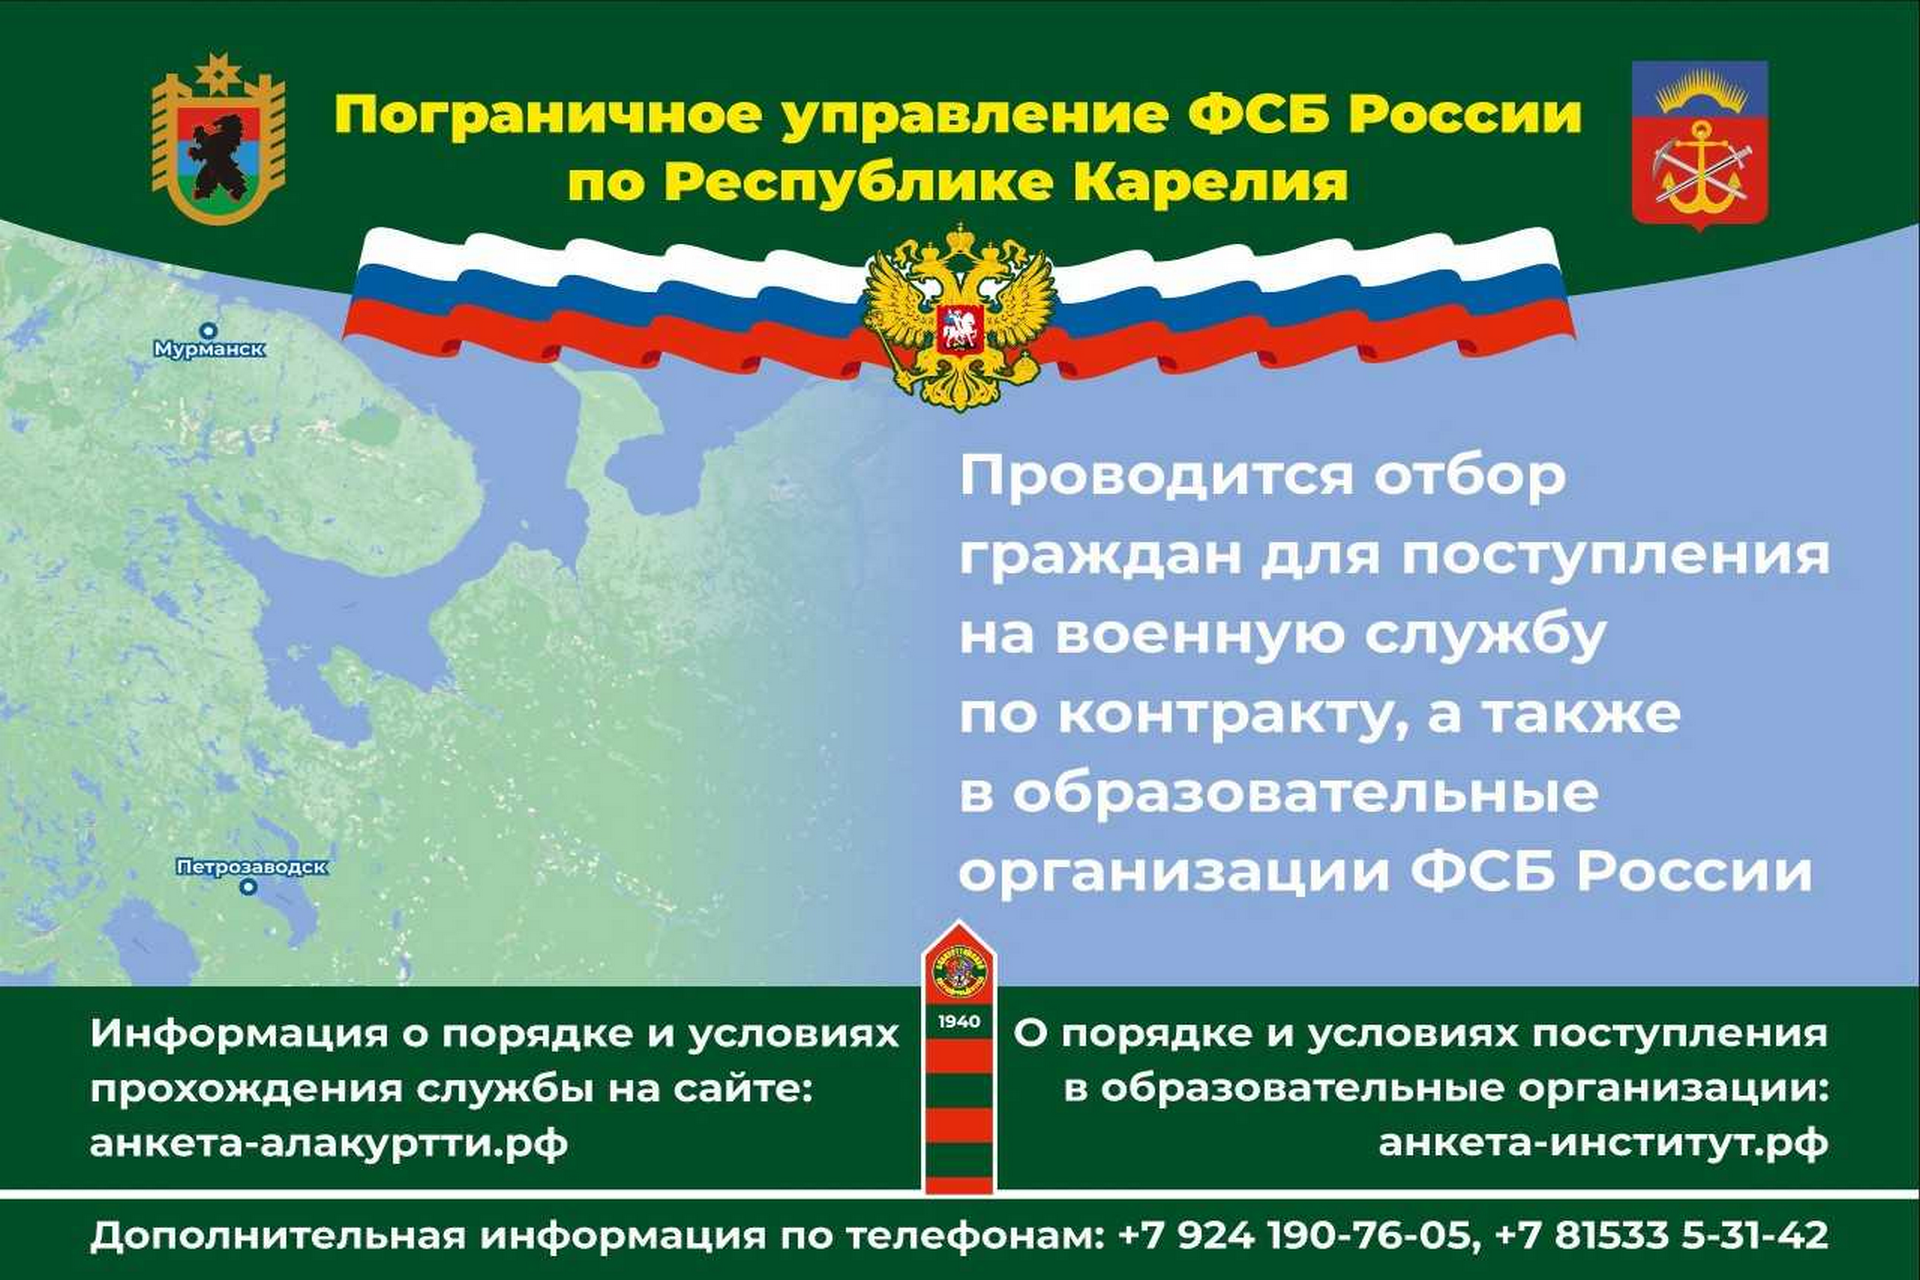 Управление ФСБ России по Республике Карелия приглашает на службу